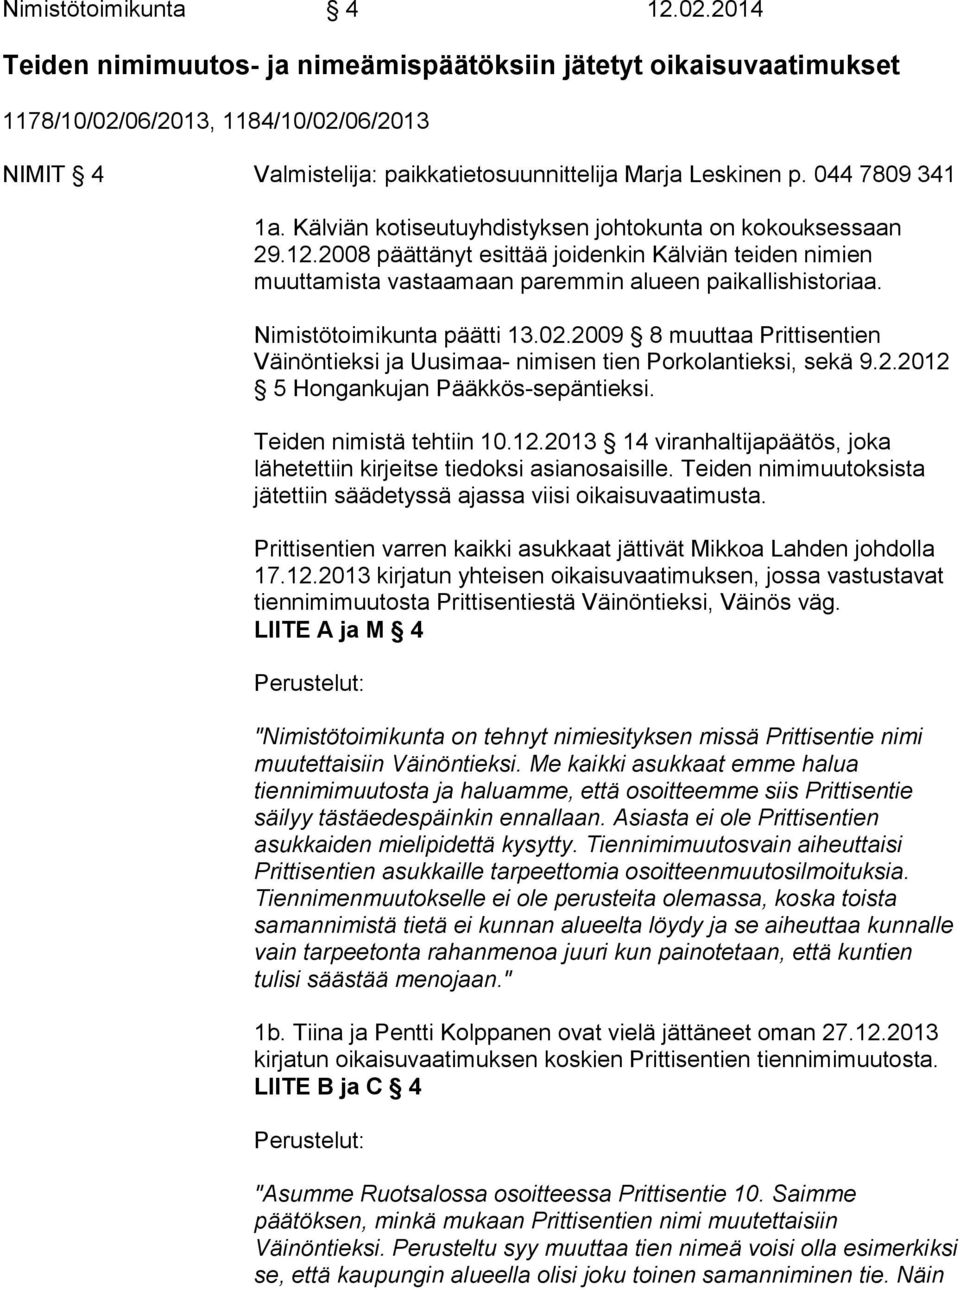 Kälviän kotiseutuyhdistyksen johtokunta on kokouksessaan 29.12.2008 päättänyt esittää joidenkin Kälviän teiden nimien muuttamista vastaamaan paremmin alueen paikallishistoriaa.